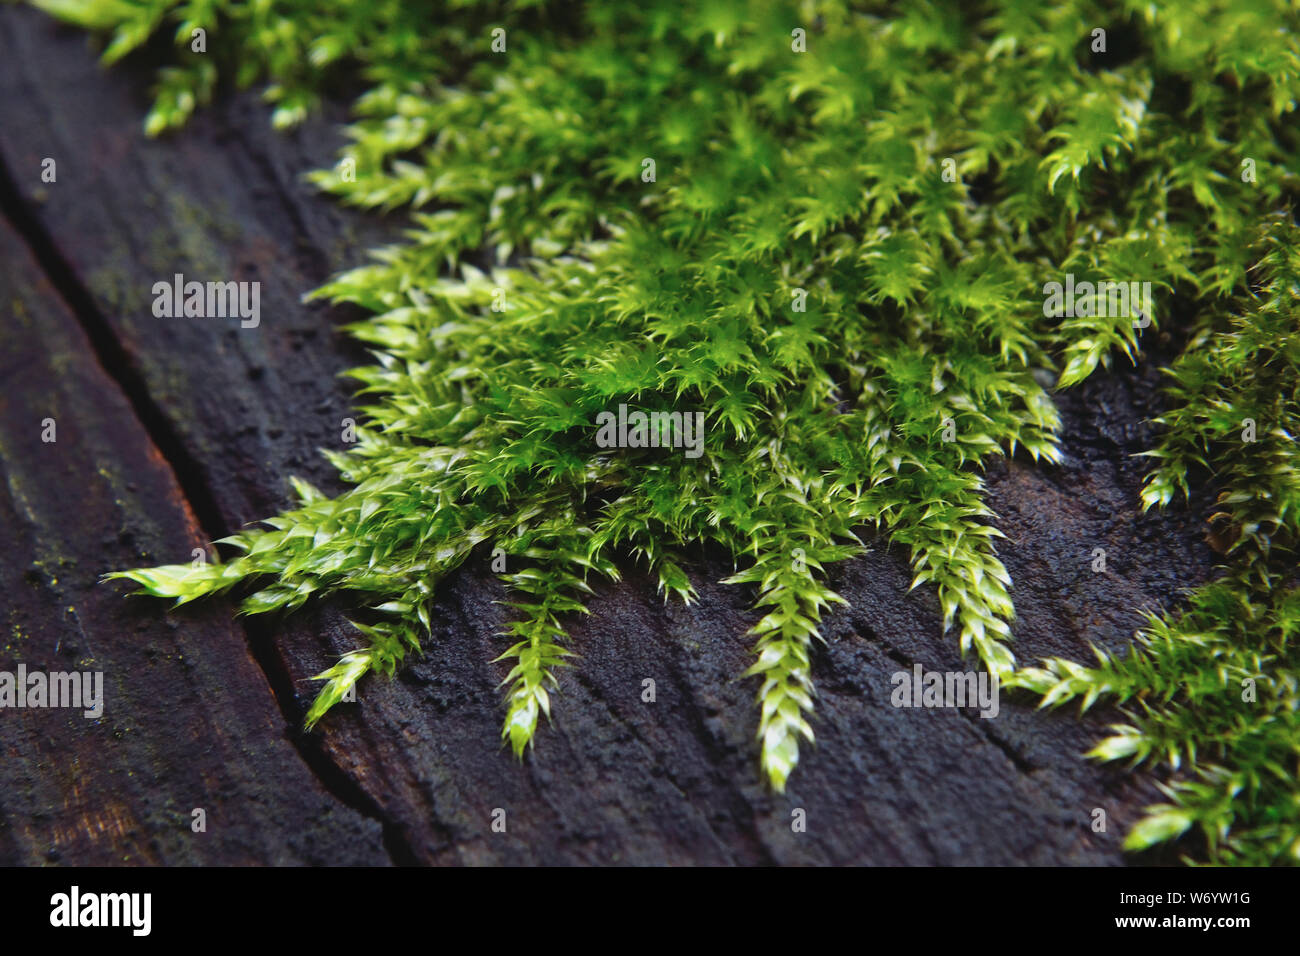 European tree moss on tree Stock Photo